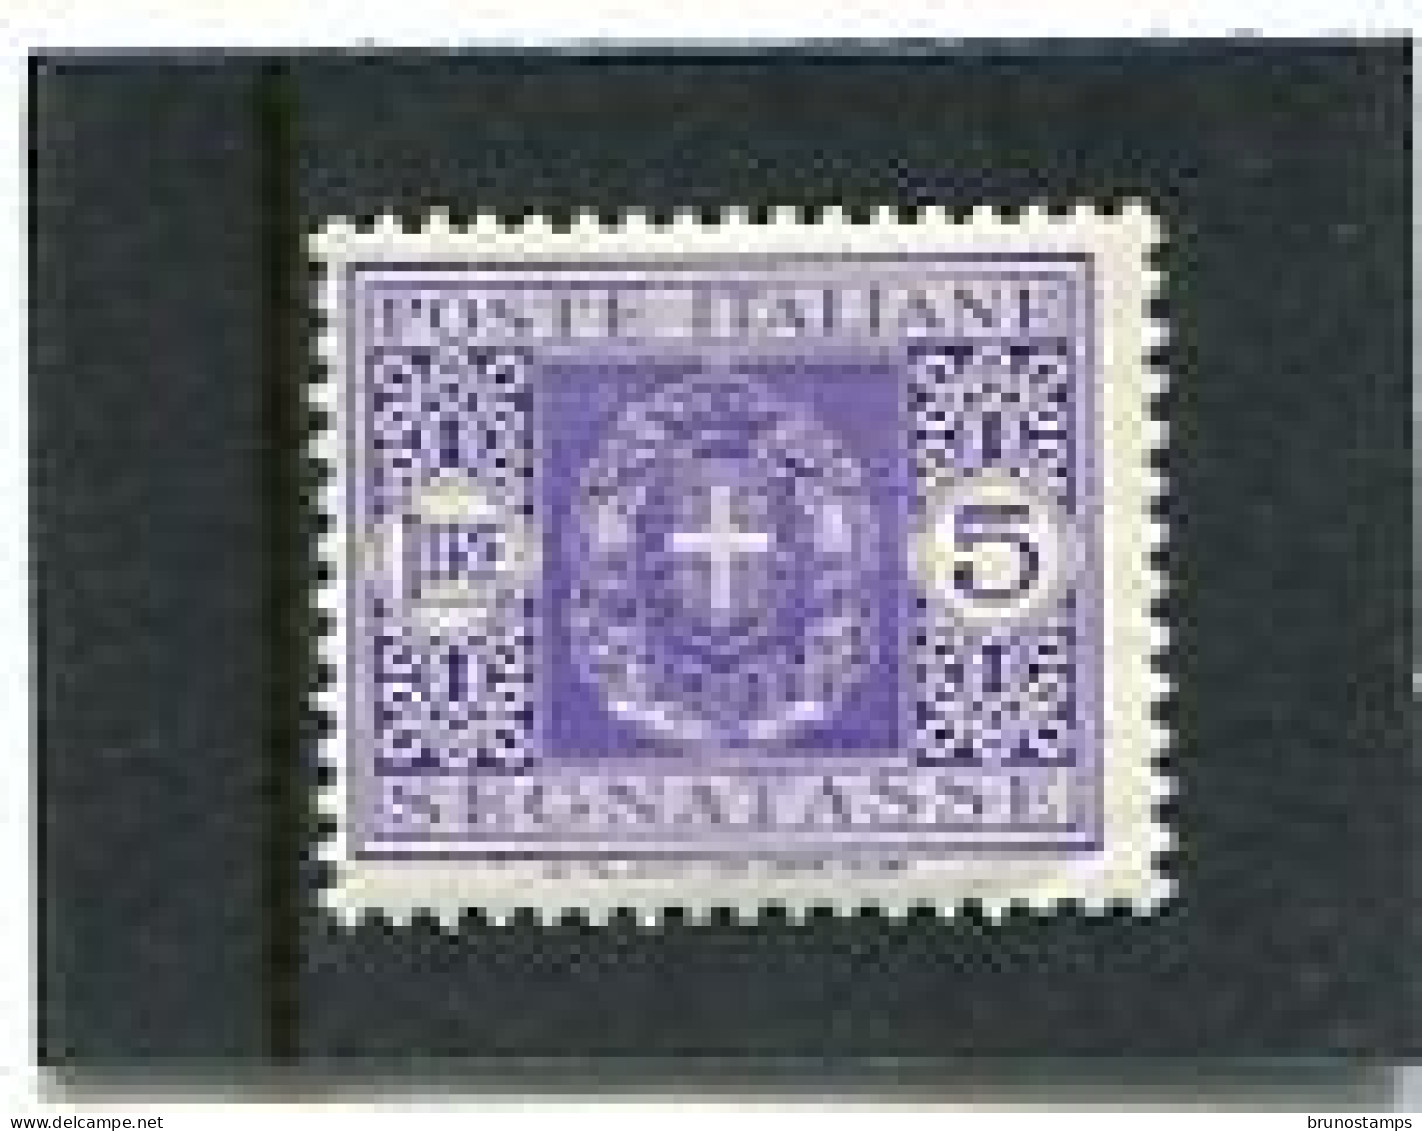 ITALY/ITALIA - 1934  POSTAGE DUE  5 L  MINT NH - Taxe